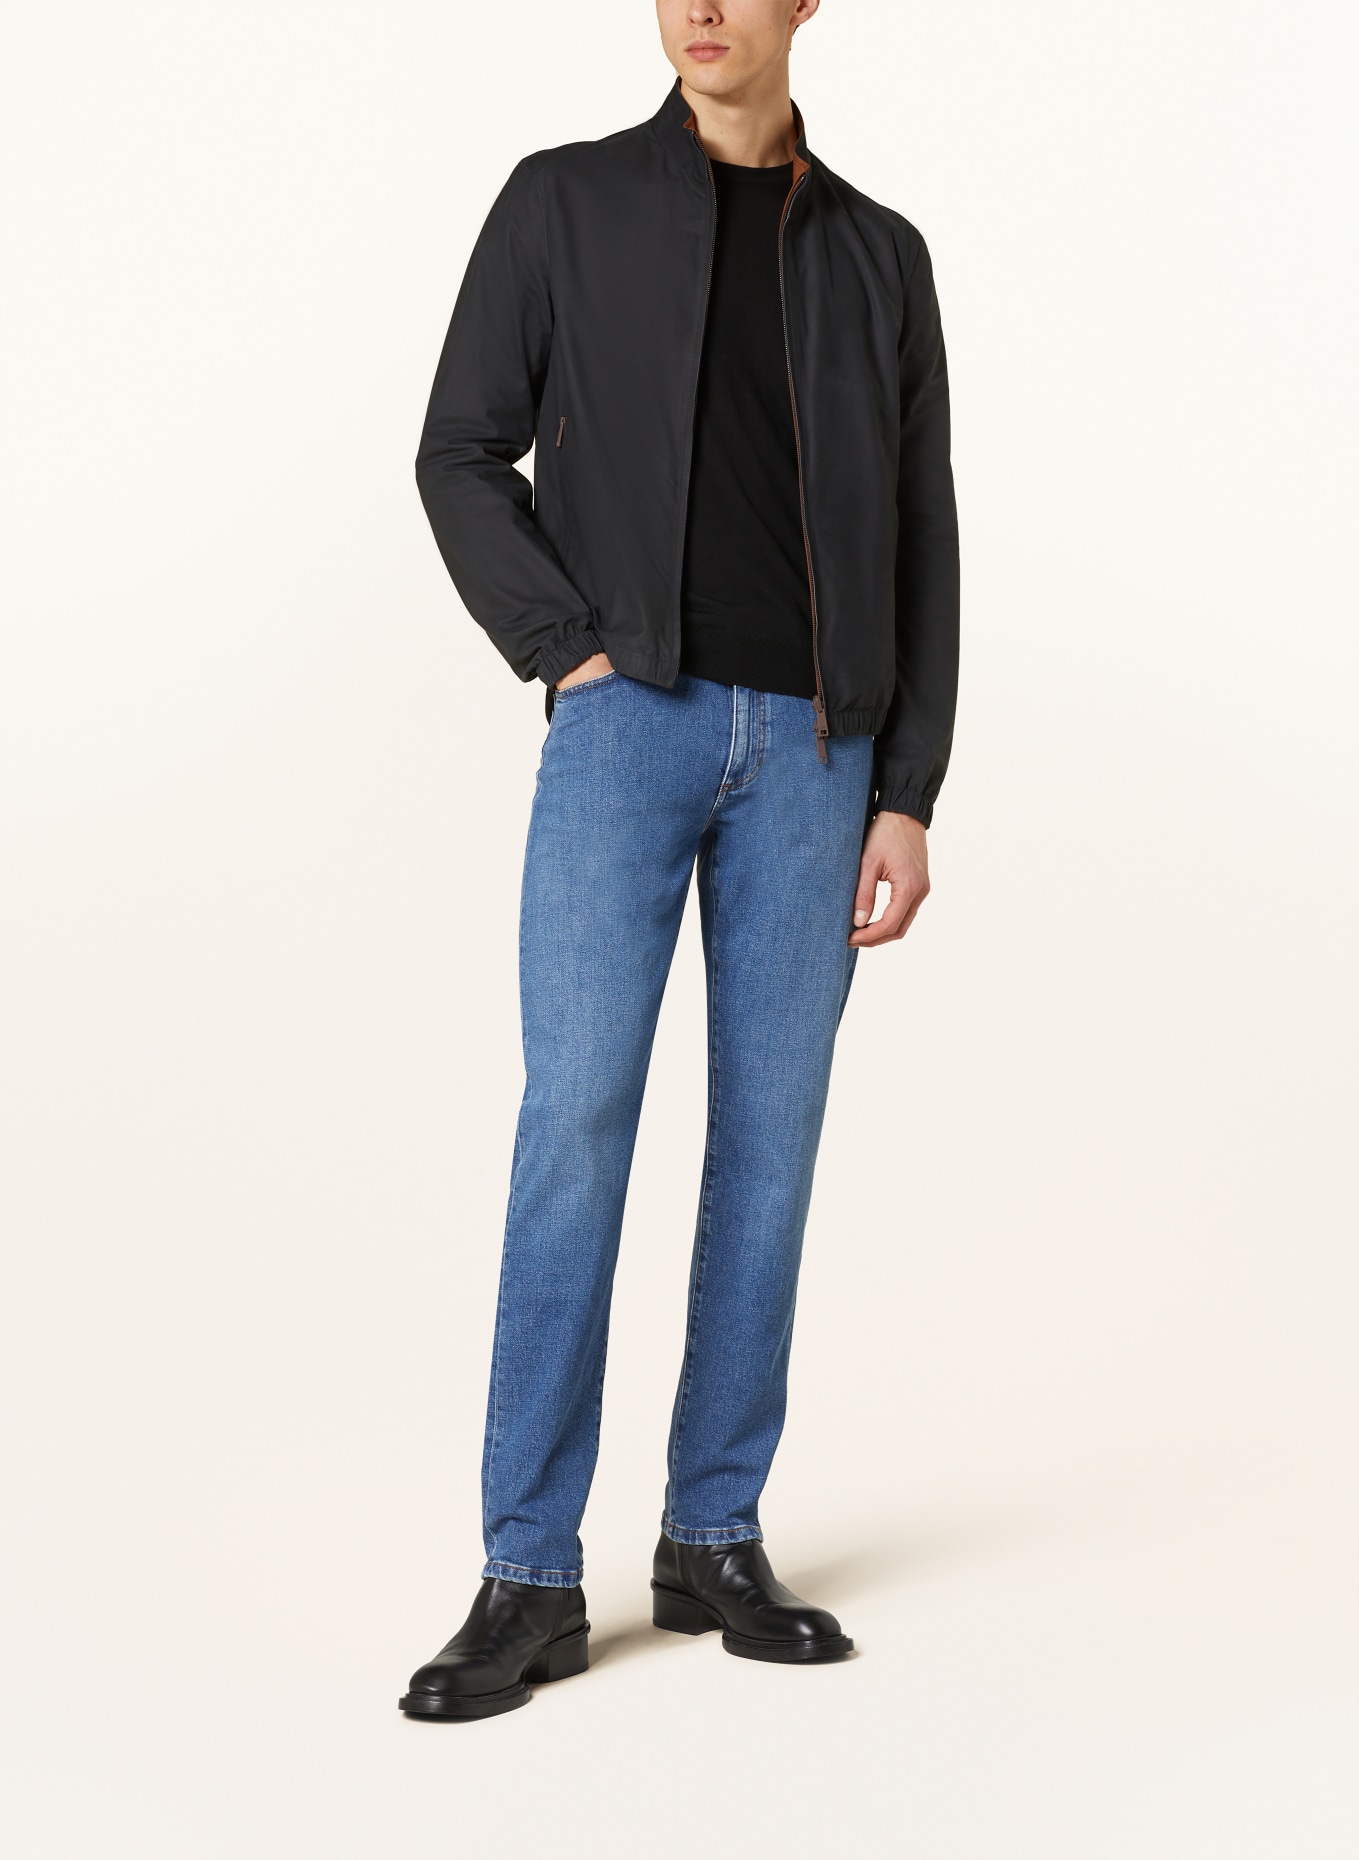 ZEGNA Reversible leather jacket, Color: BLACK/ BROWN (Image 2)